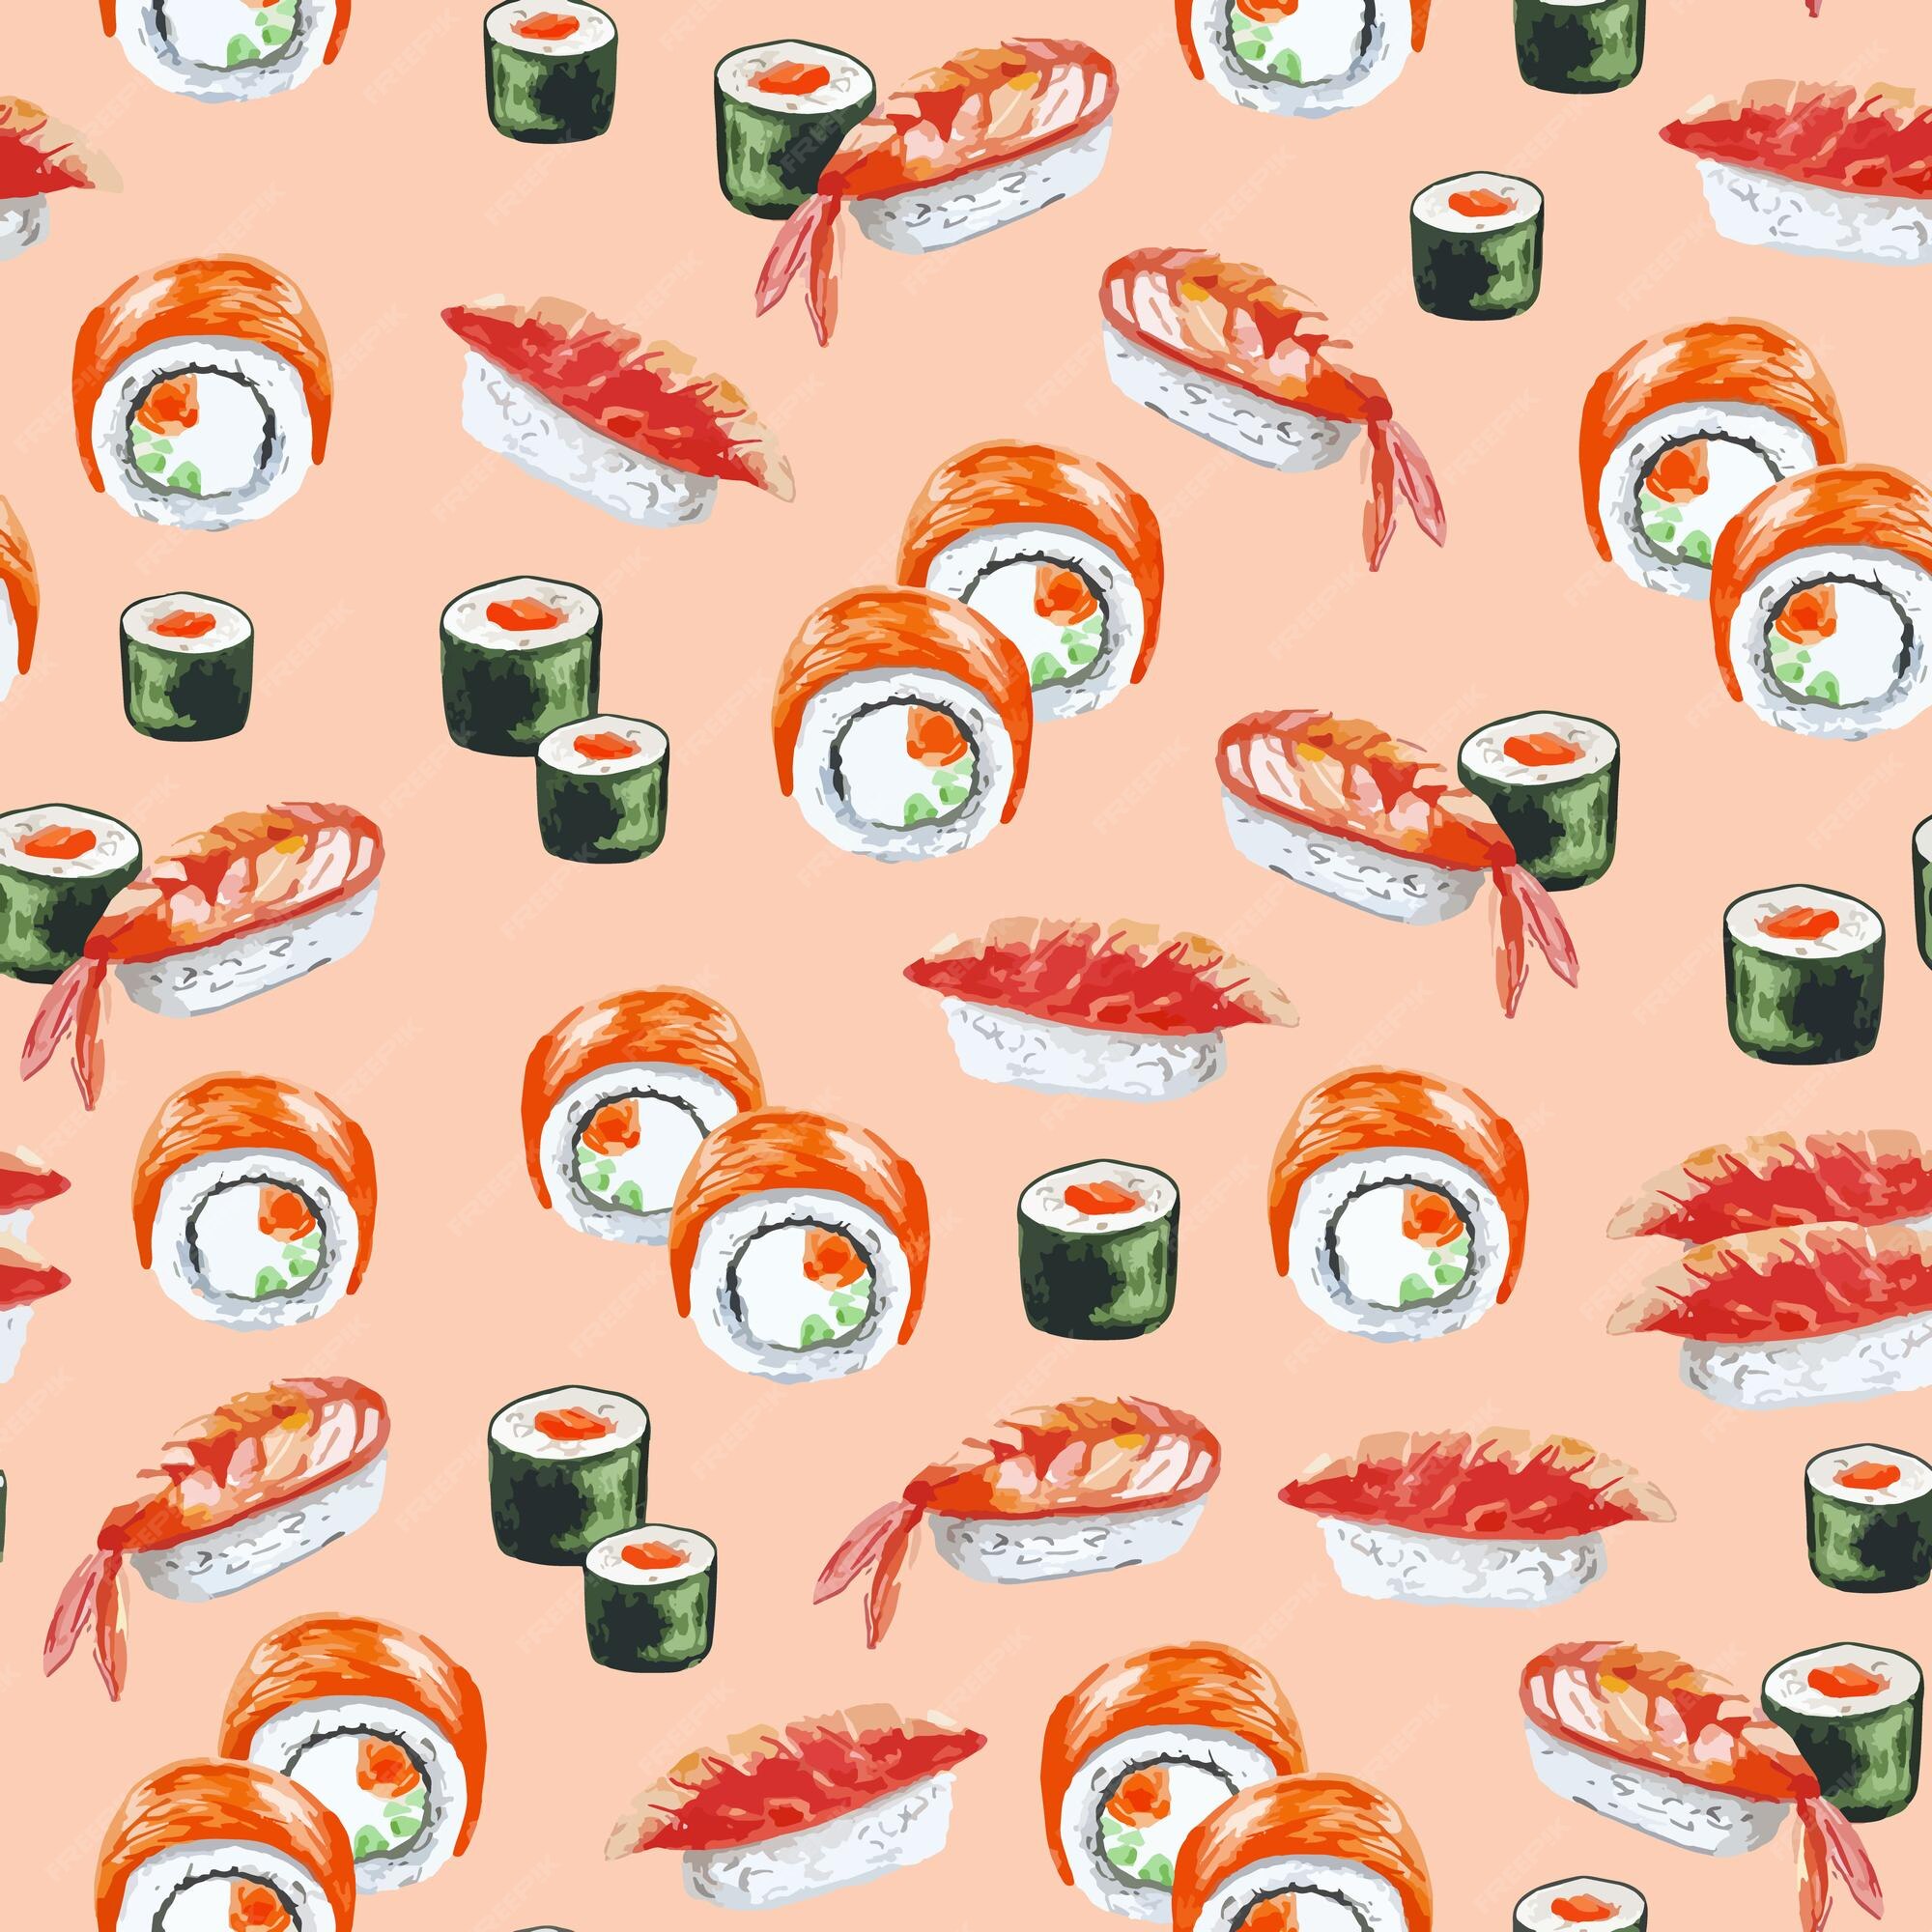 Nếu bạn yêu thích ẩm thực châu Á, thì hoa văn nước sơn của đồ ăn châu Á sushi sẽ khiến bạn say mê. Từ các hình ảnh thuyết phục đến những chi tiết tinh tế, bạn sẽ khám phá những món ăn độc quyền và hấp dẫn nhất. Hãy cùng đắm chìm trong không gian ẩm thực độc đáo này. 